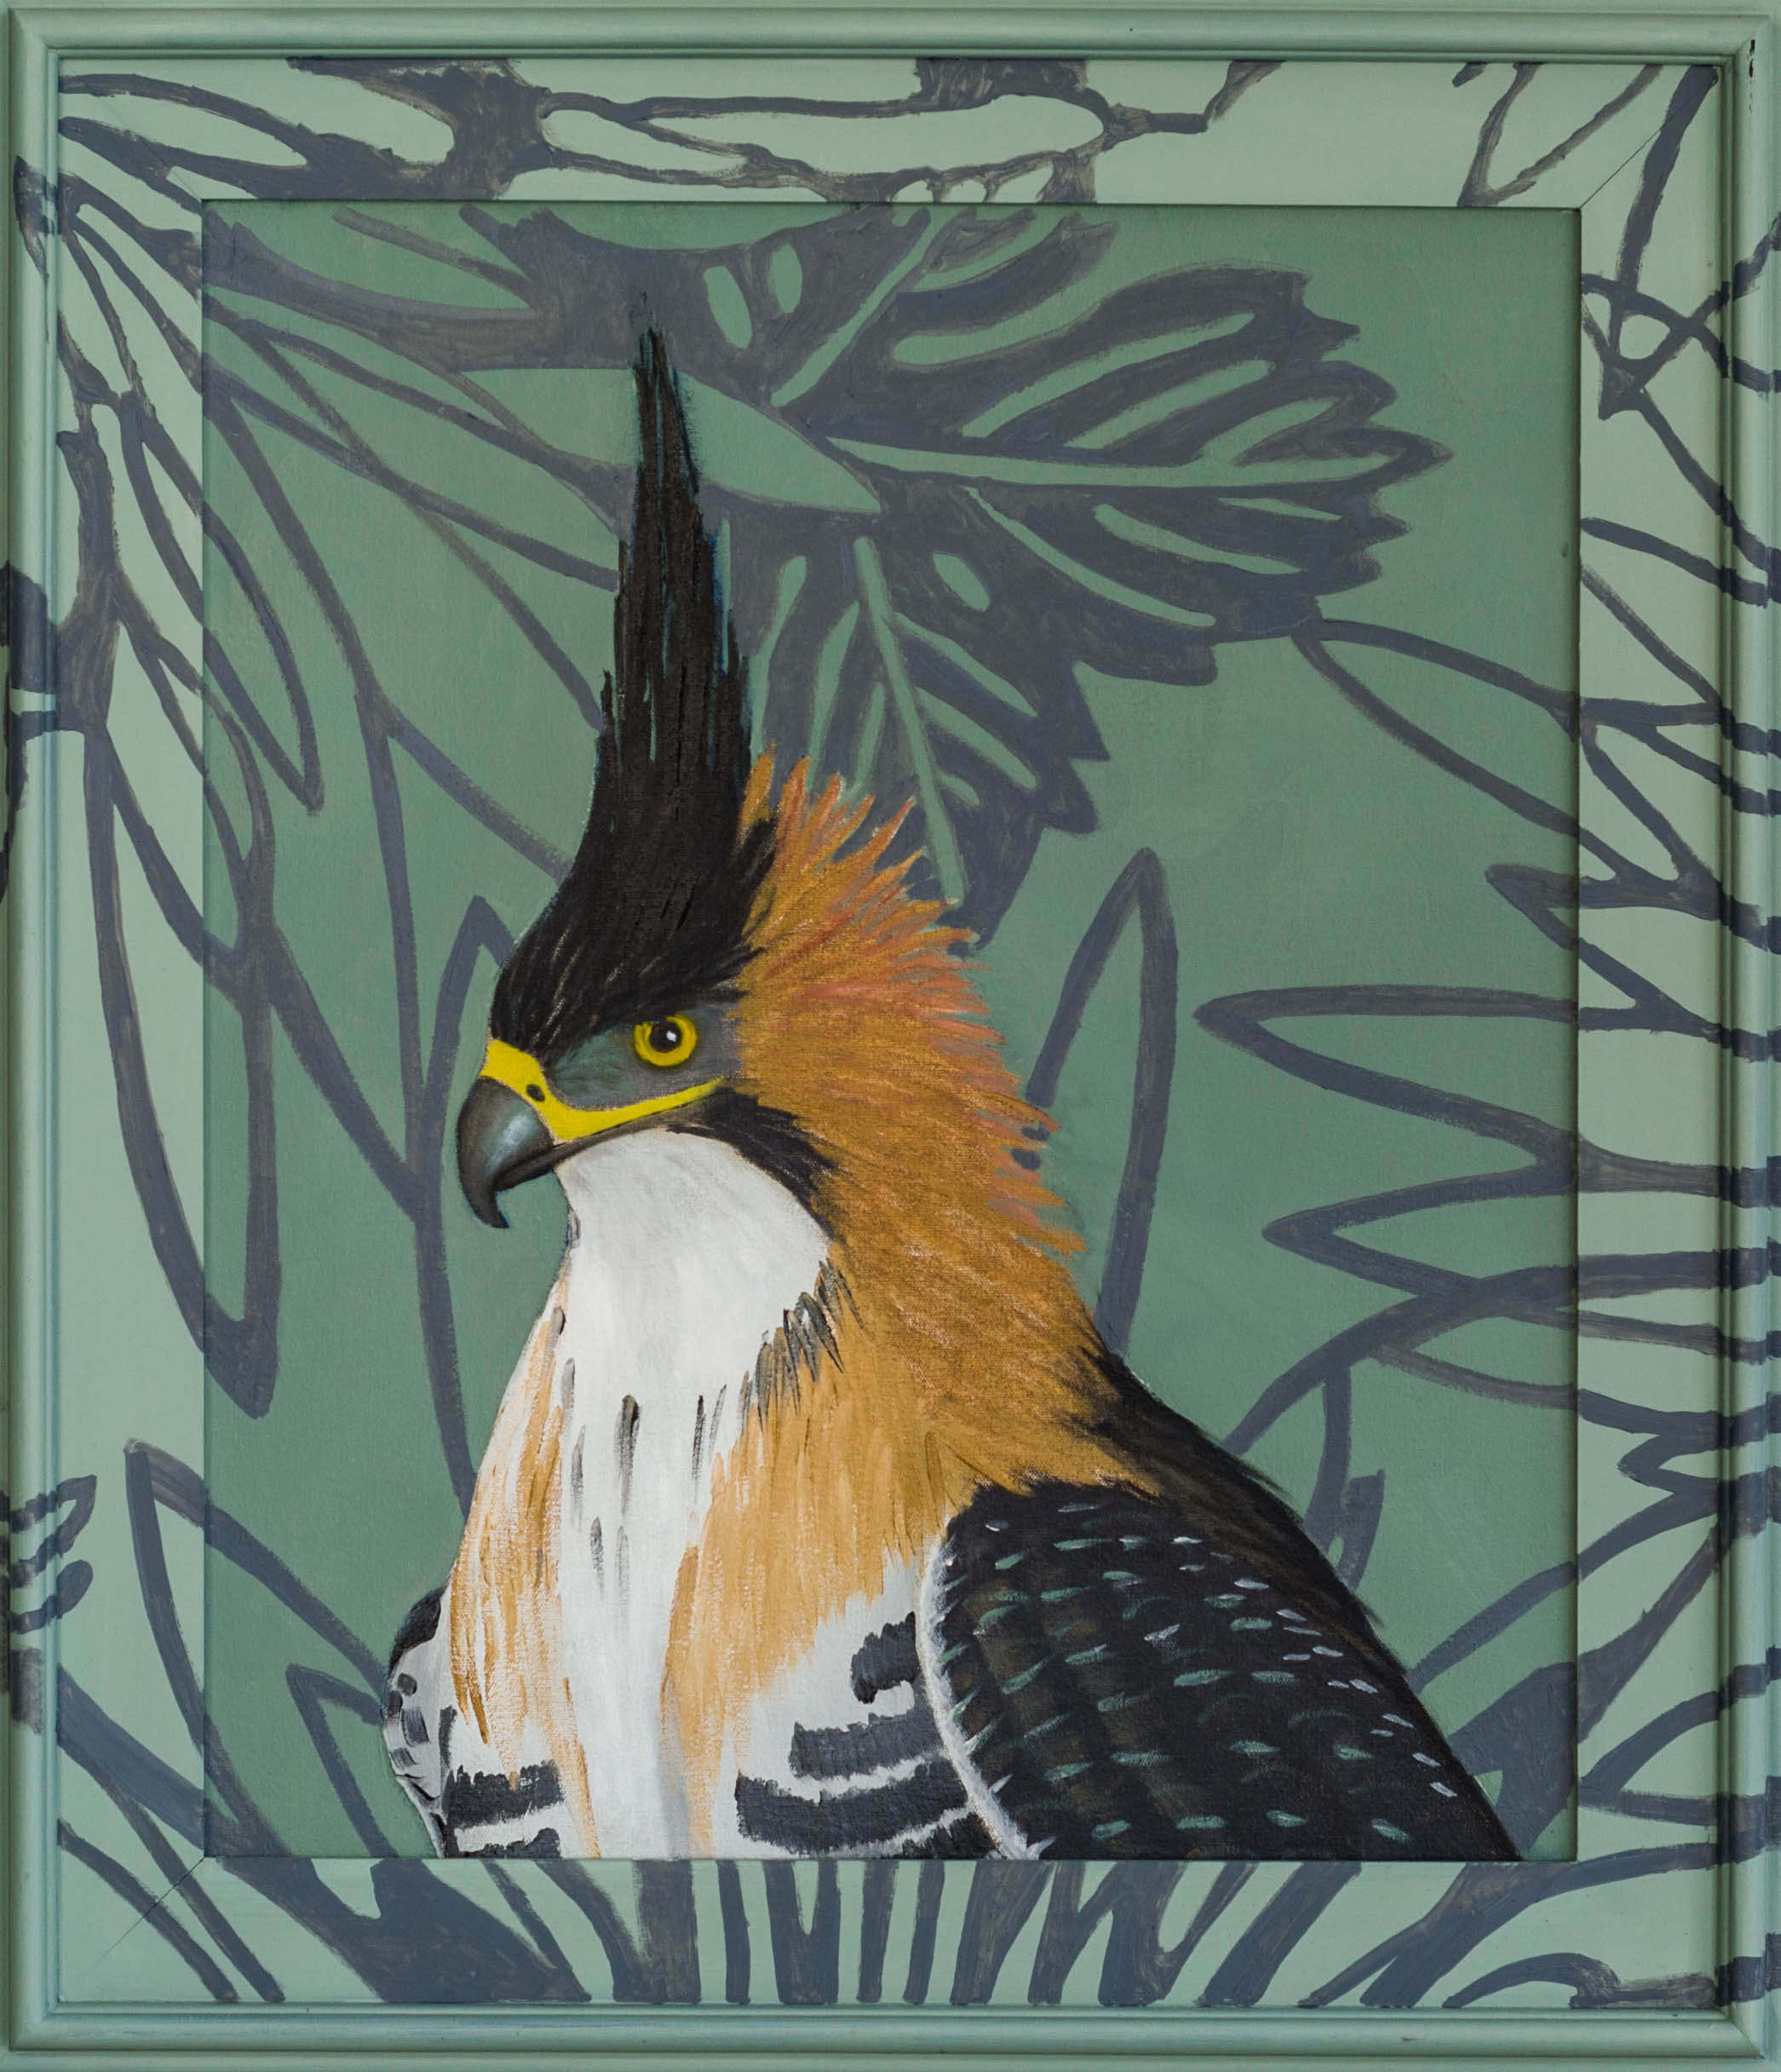 Ornamental Eagle Hawk 30x26 (framed) Oil on canvas 2015